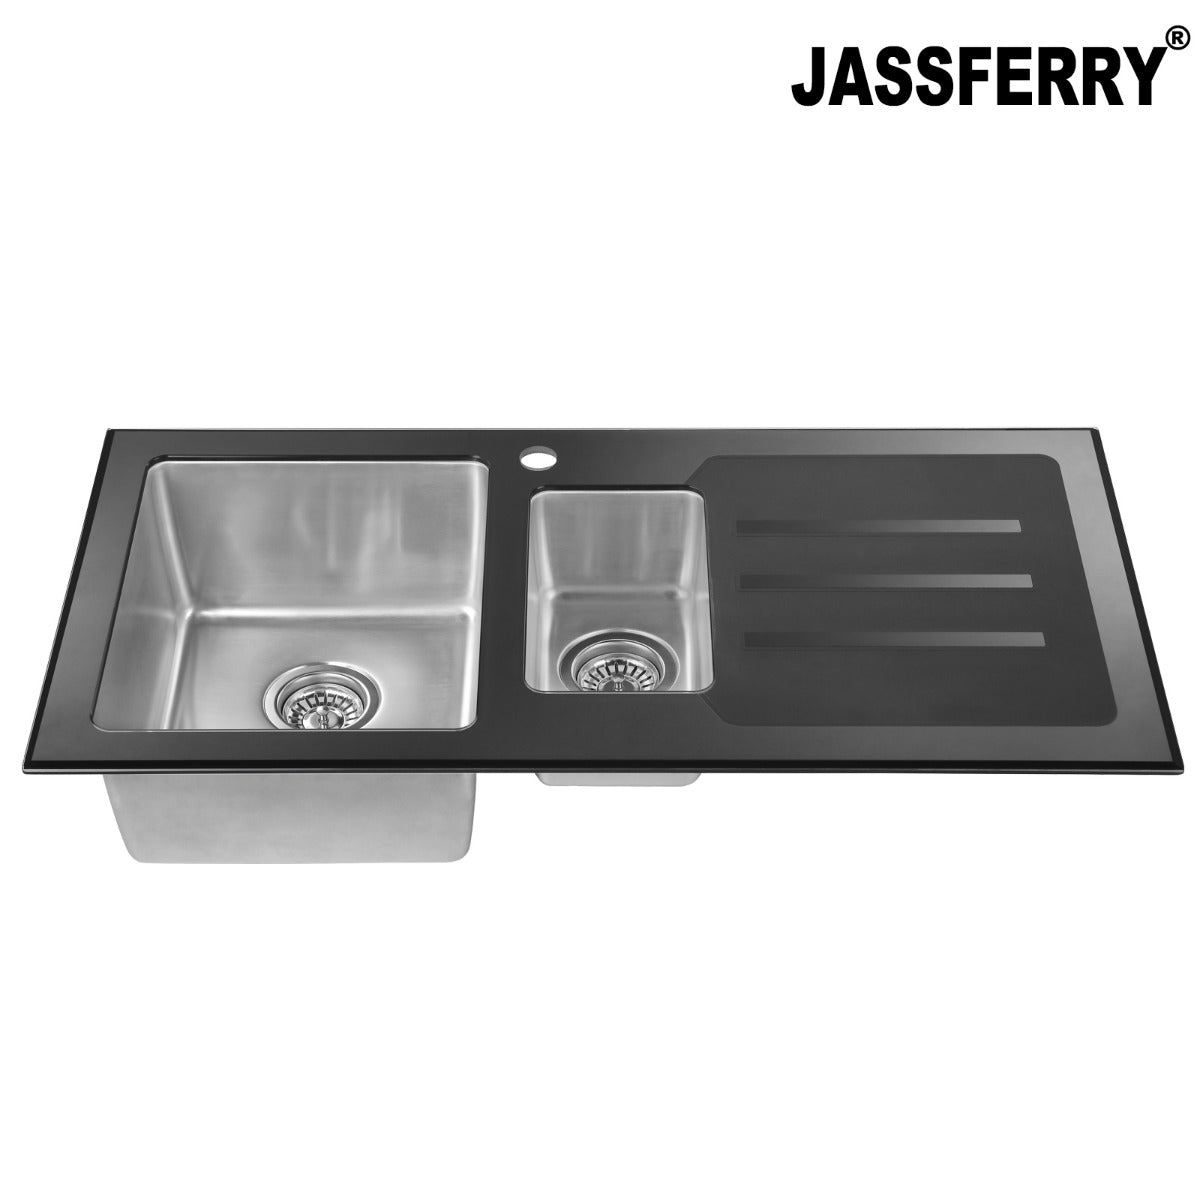 JassferryJASSFERRY Kitchen Sink Stainless Steel 1.5 Bowl Black Glass Righthand DrainerKitchen Sinks